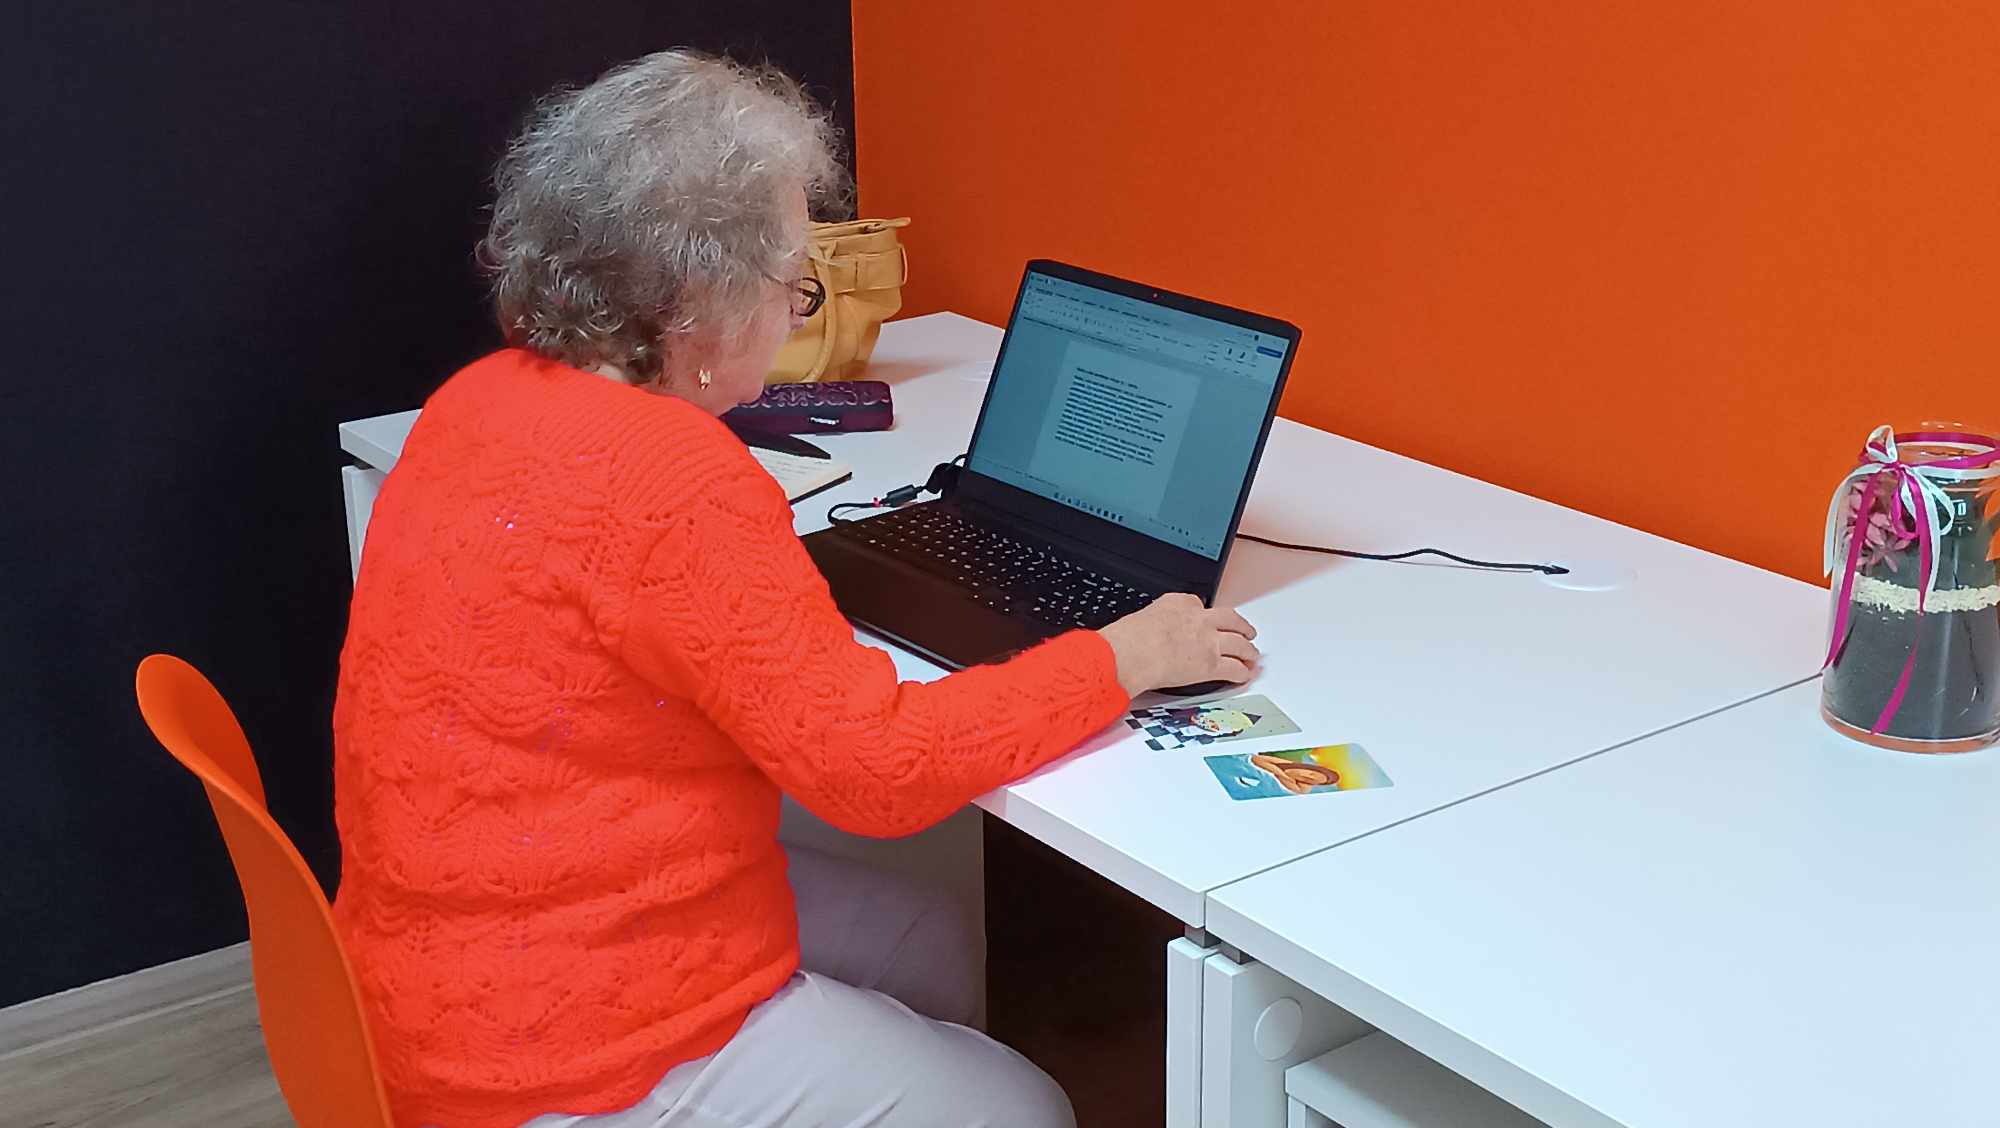 strasza kobieta siedzi przy biurku i korzysta z laptopa